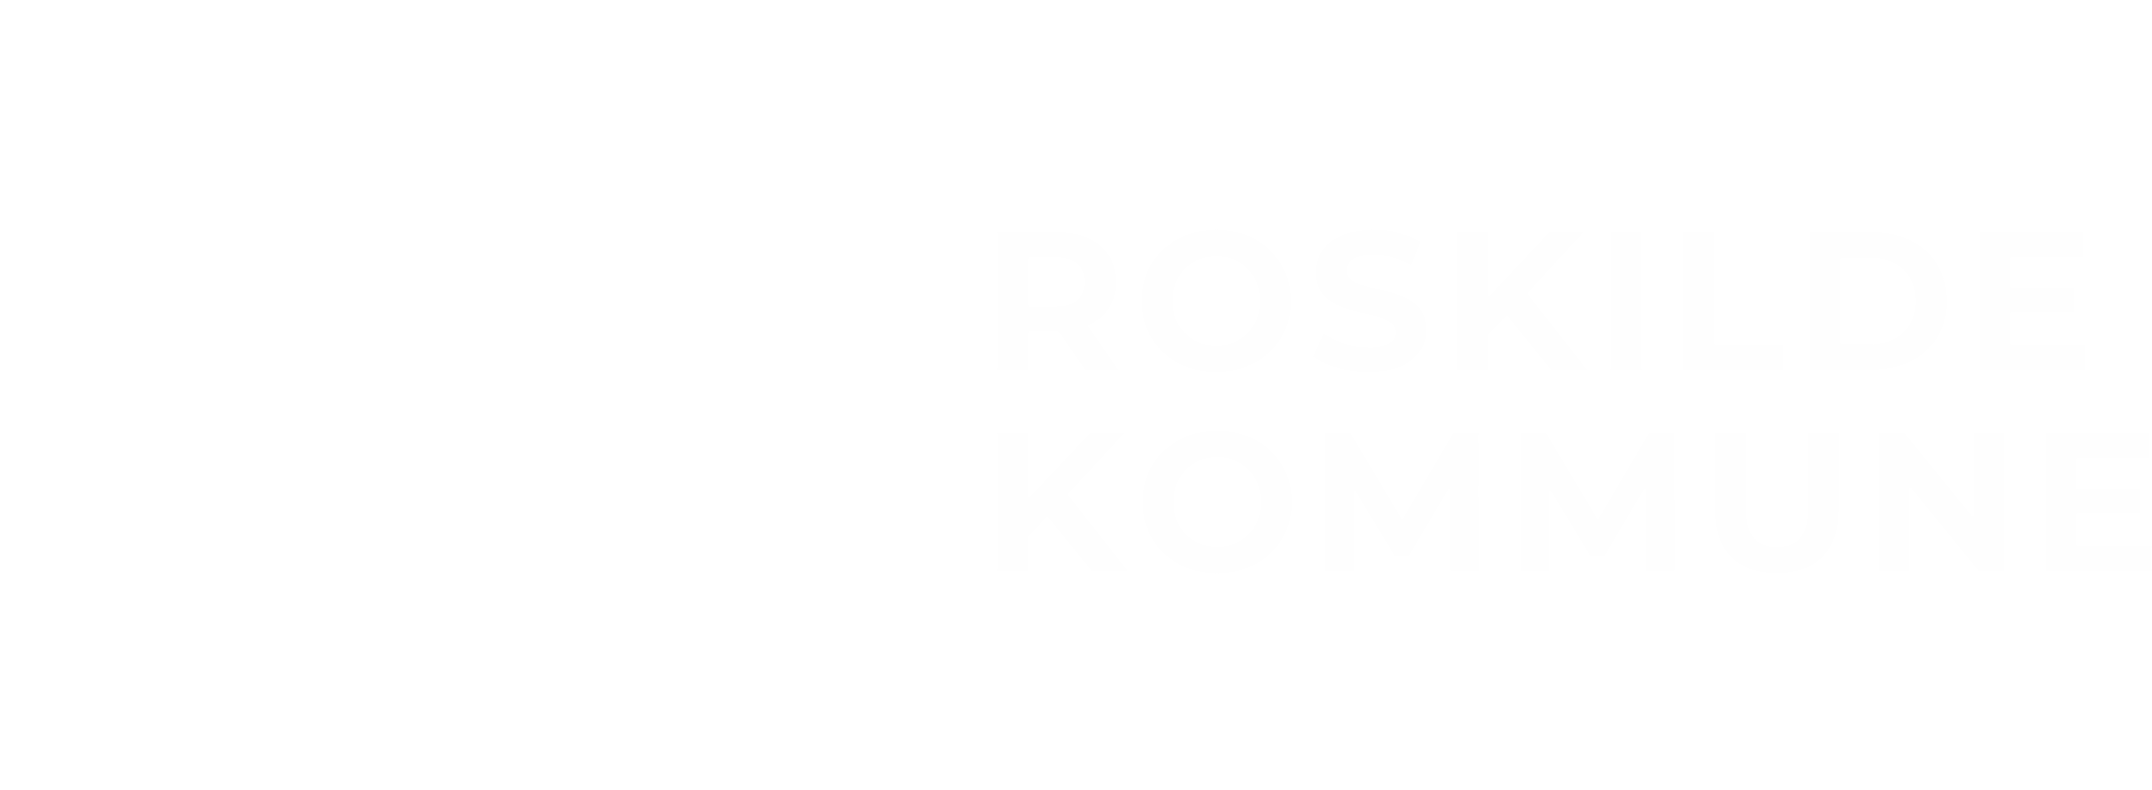 Roskilde Kommune logo